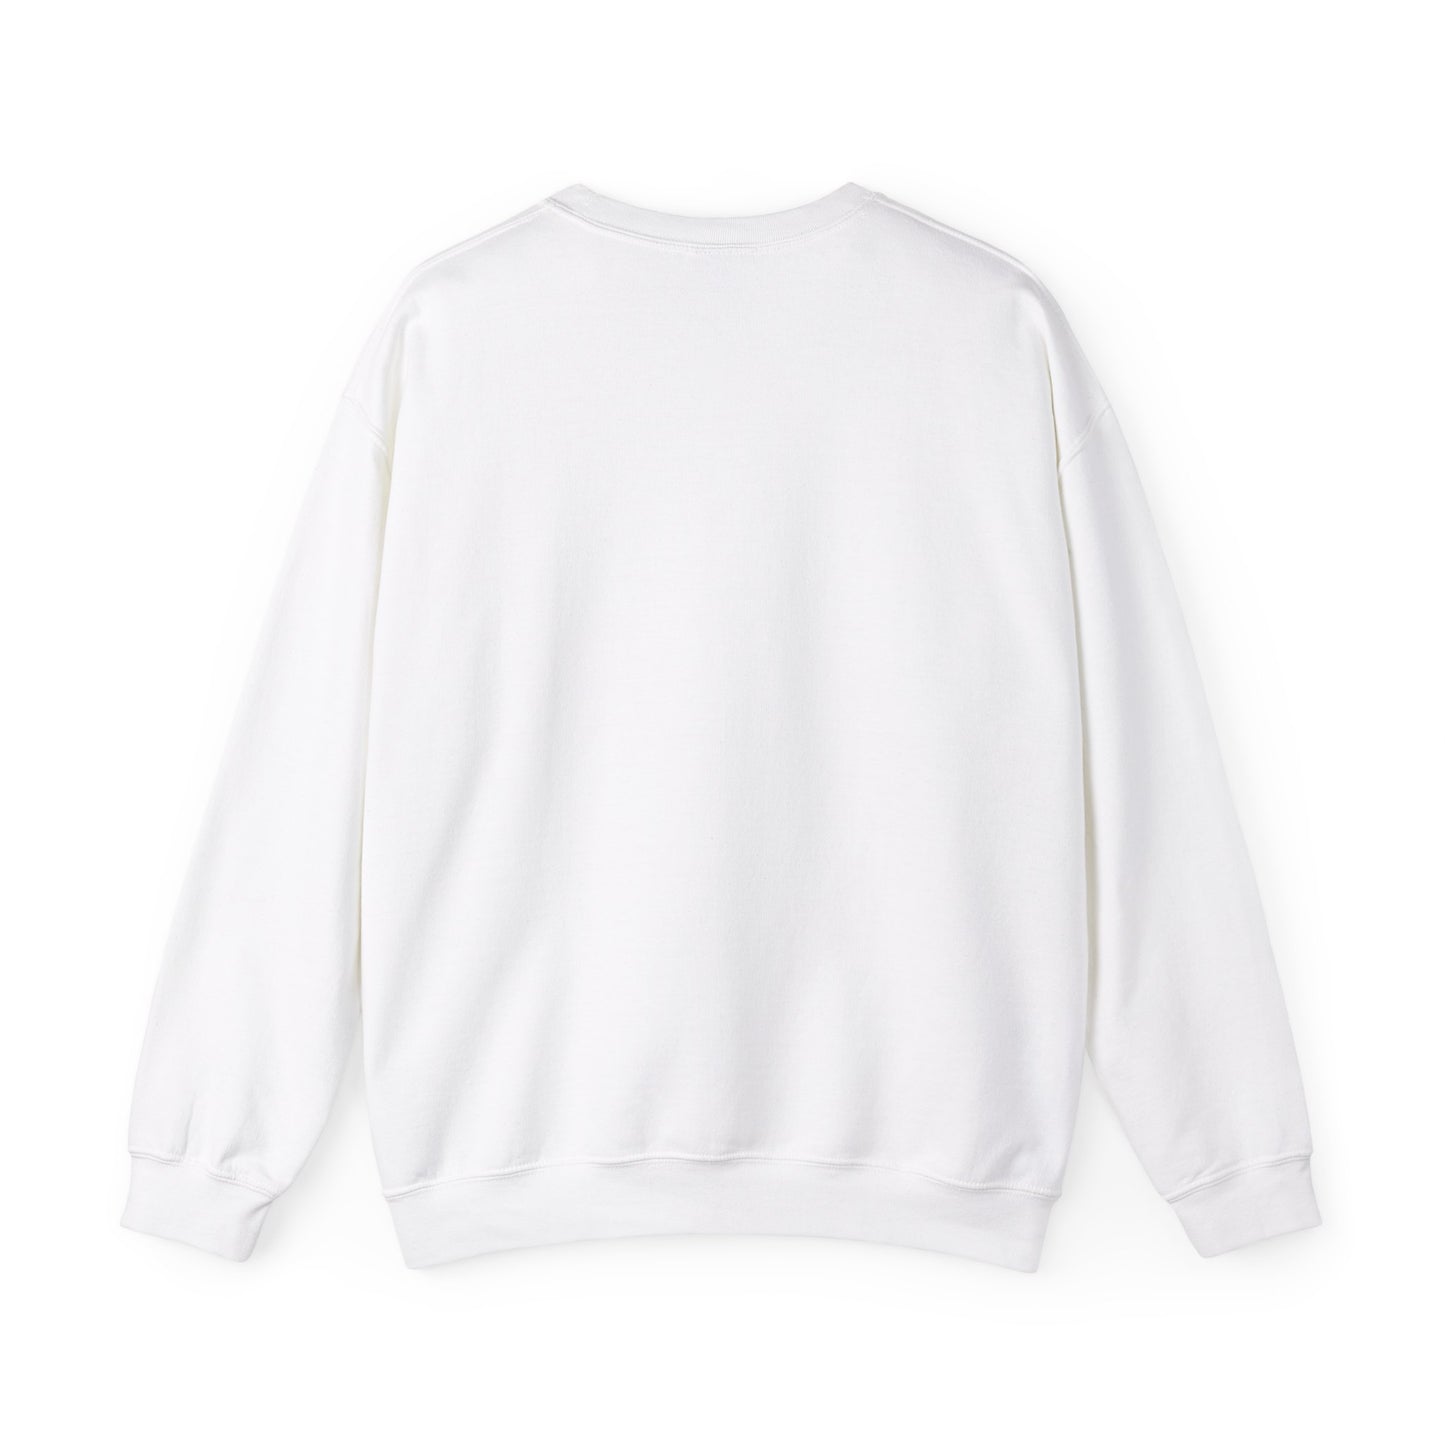 Not Broken Just Different | Unisex Sweatshirt